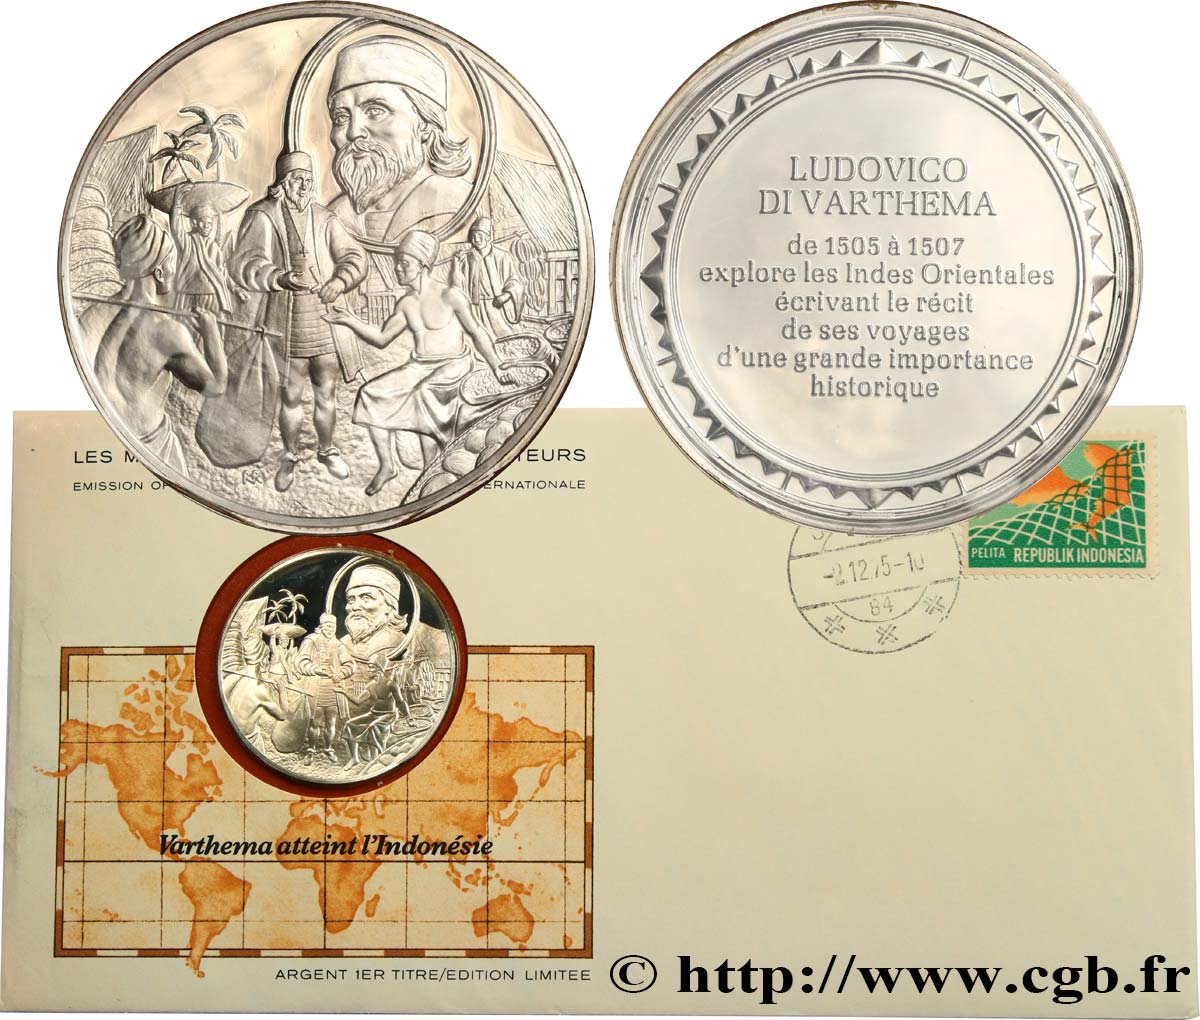 THE GREAT EXPLORERS  MEDALS Enveloppe “Timbre médaille”, Varthema atteint l’Indonésie SC